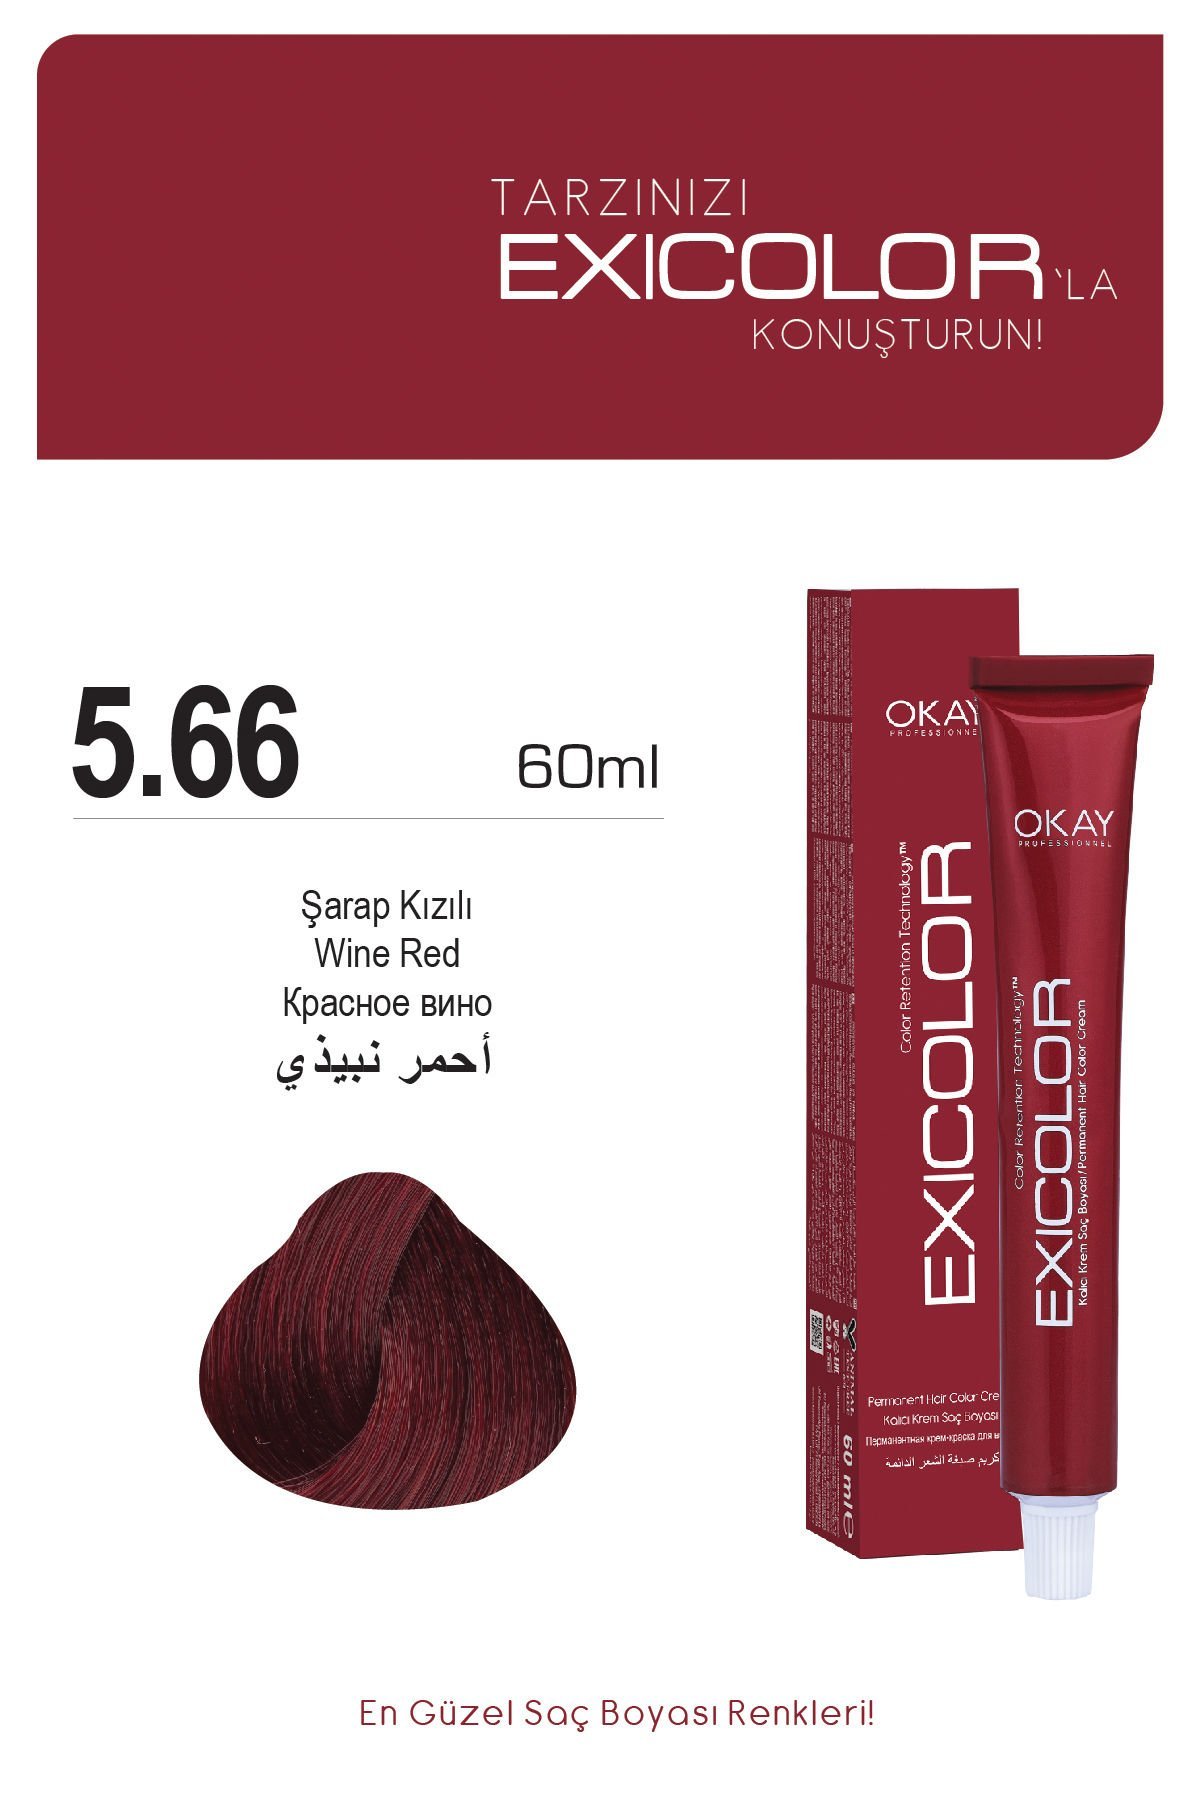 Exicolor 5.66 Şarap Kızılı - Kalıcı Krem Saç Boyası 60 ml Tüp